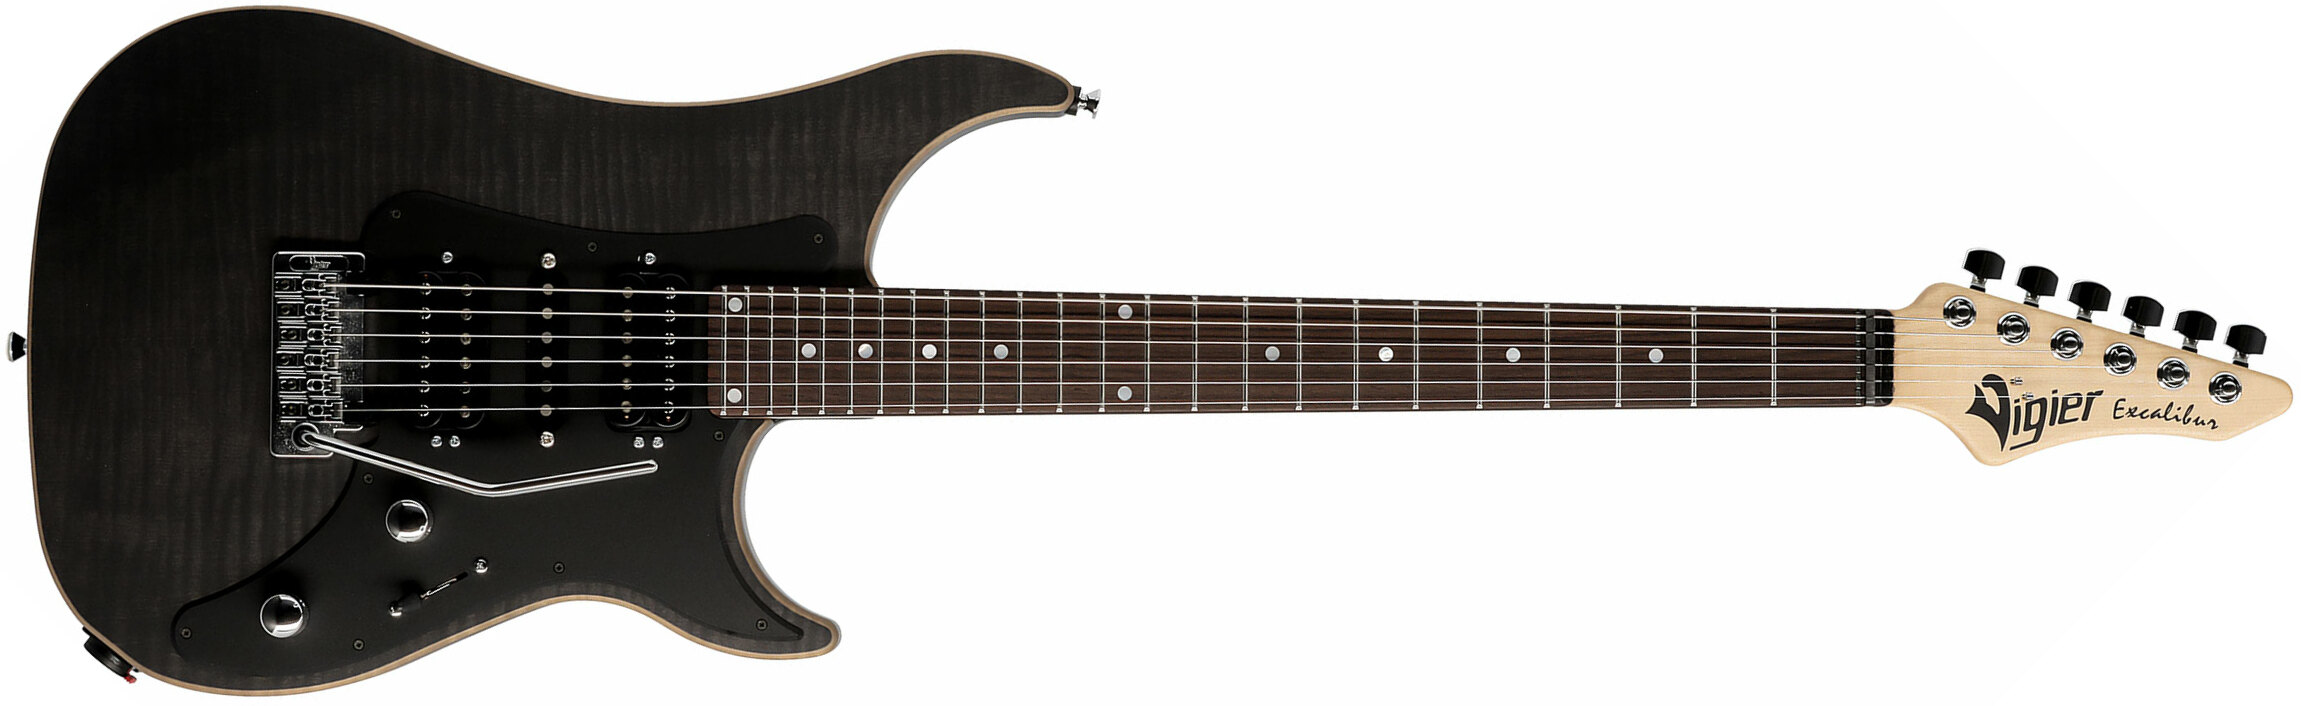 Vigier Excalibur Special Hsh Trem Rw - Black Diamond Matte - Guitarra eléctrica con forma de str. - Main picture